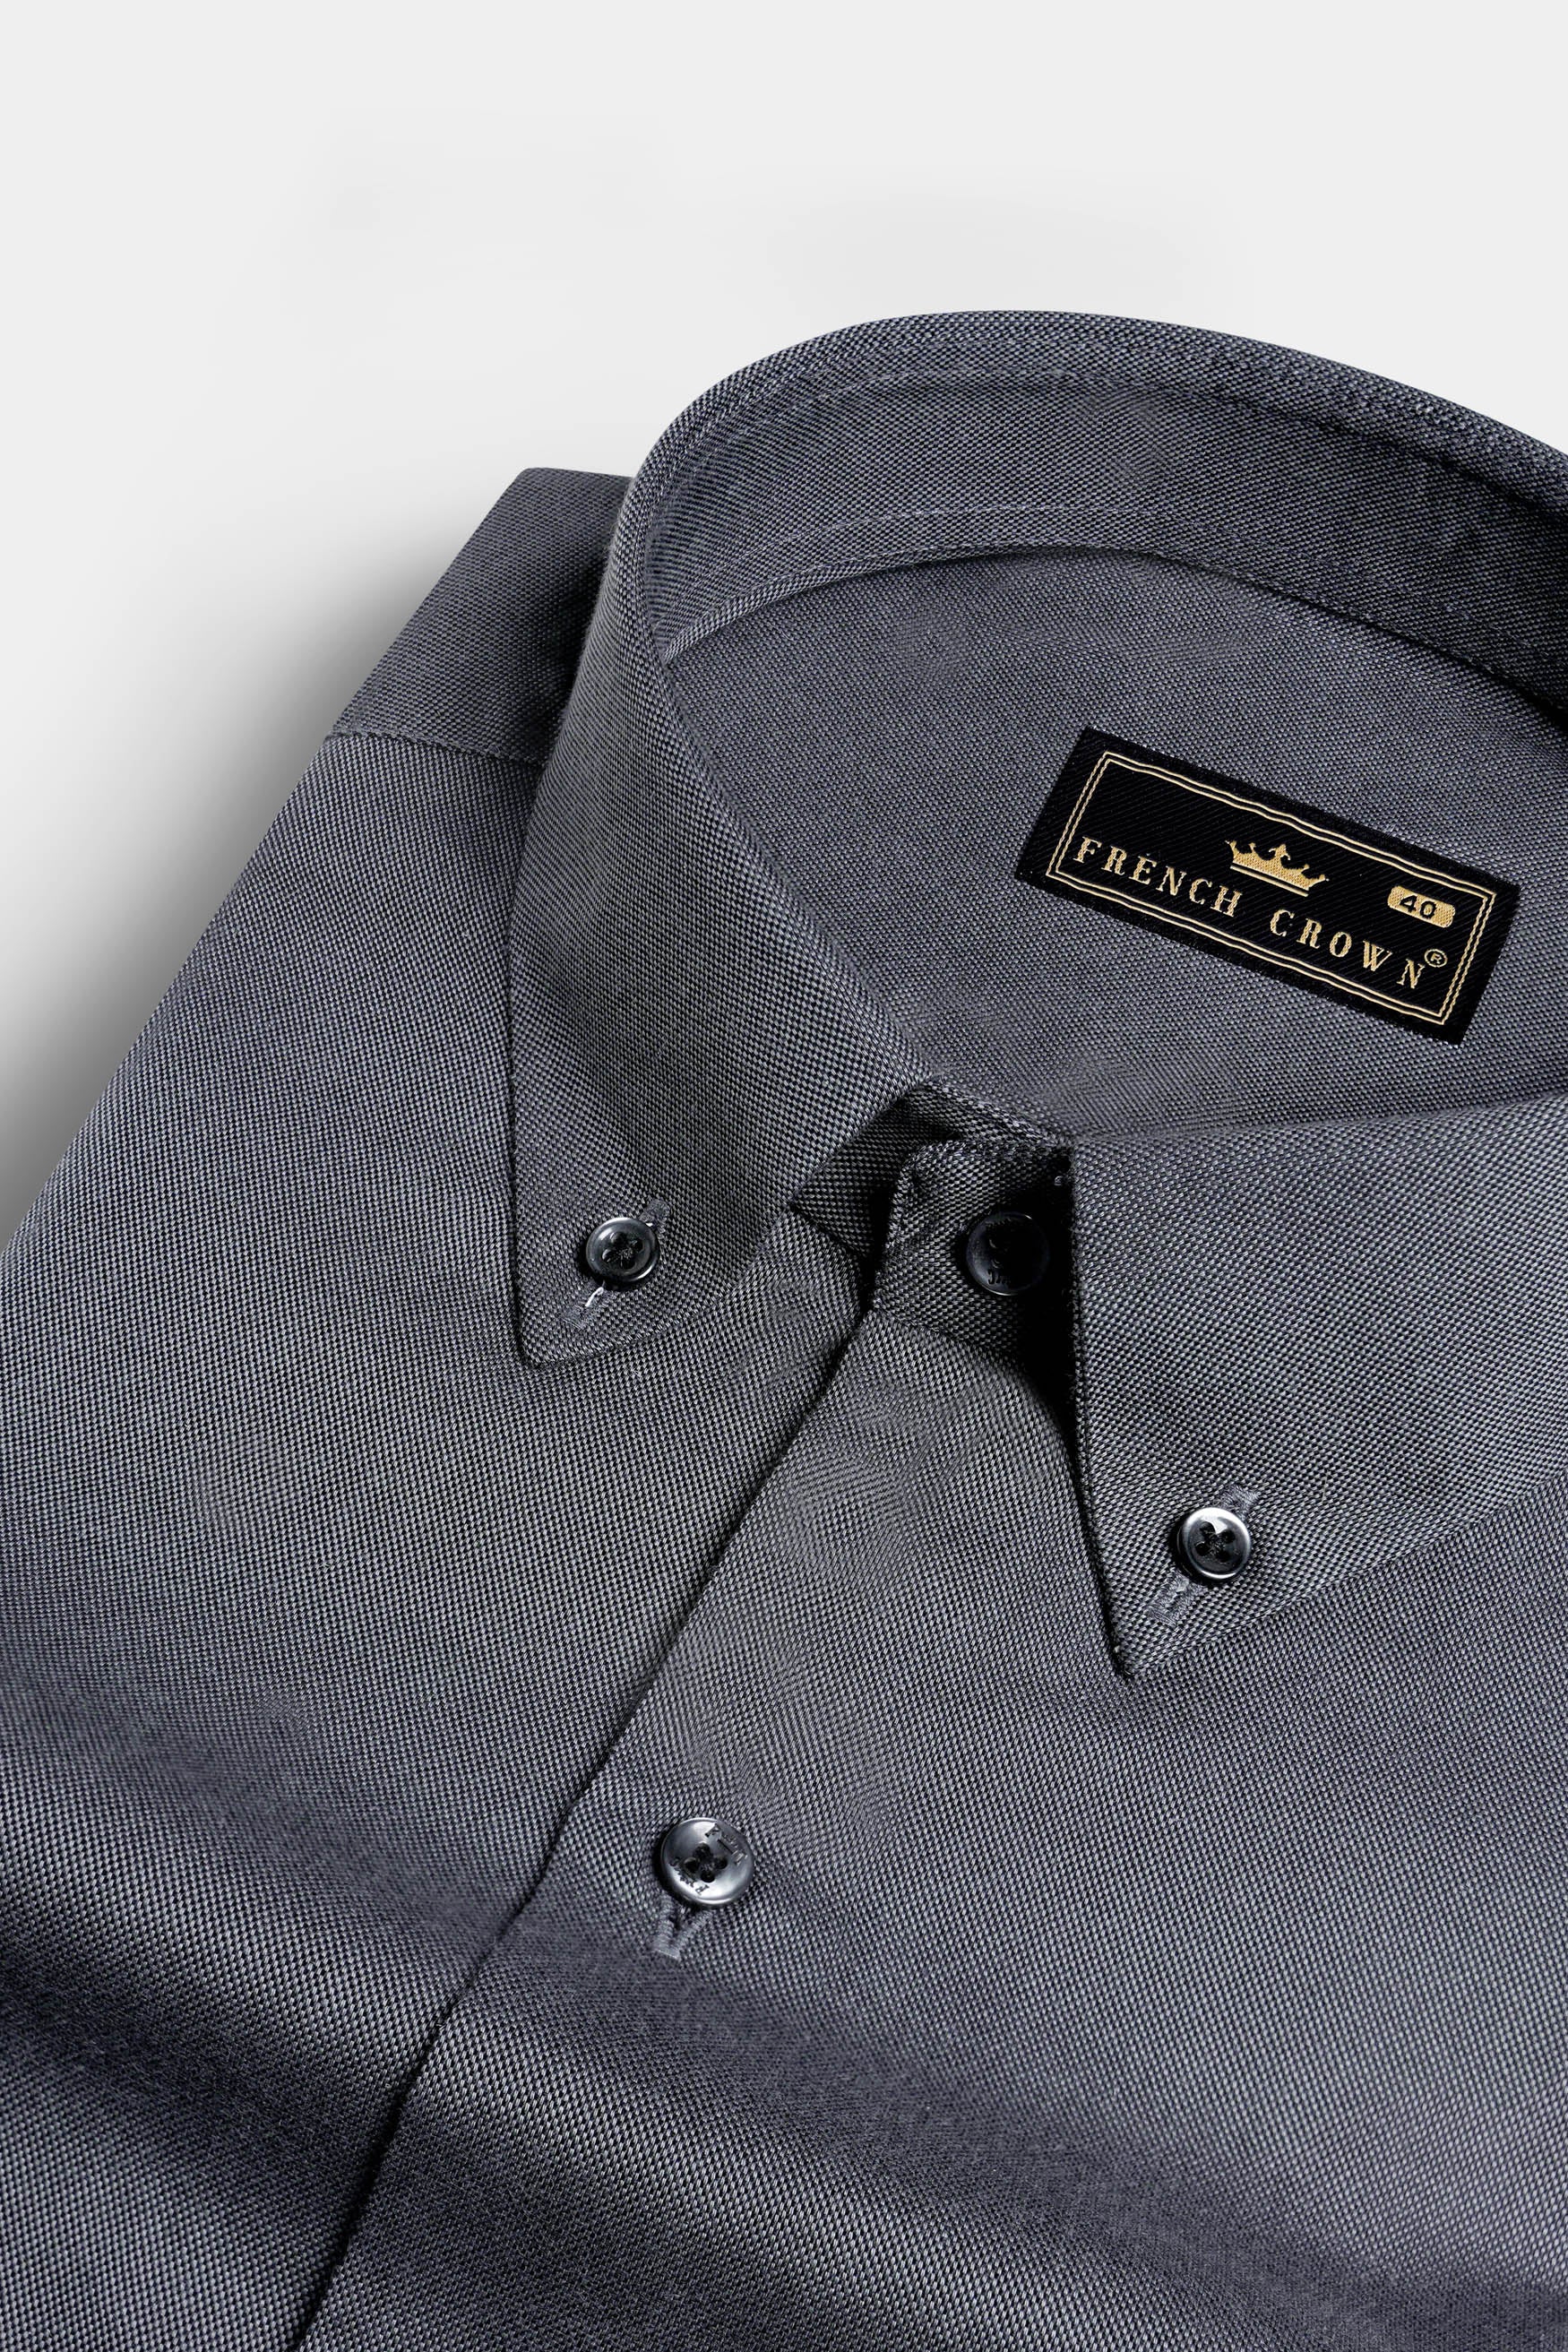 Bluish Gray Multicolour Casual Printed Premium Cotton Shirt For Men